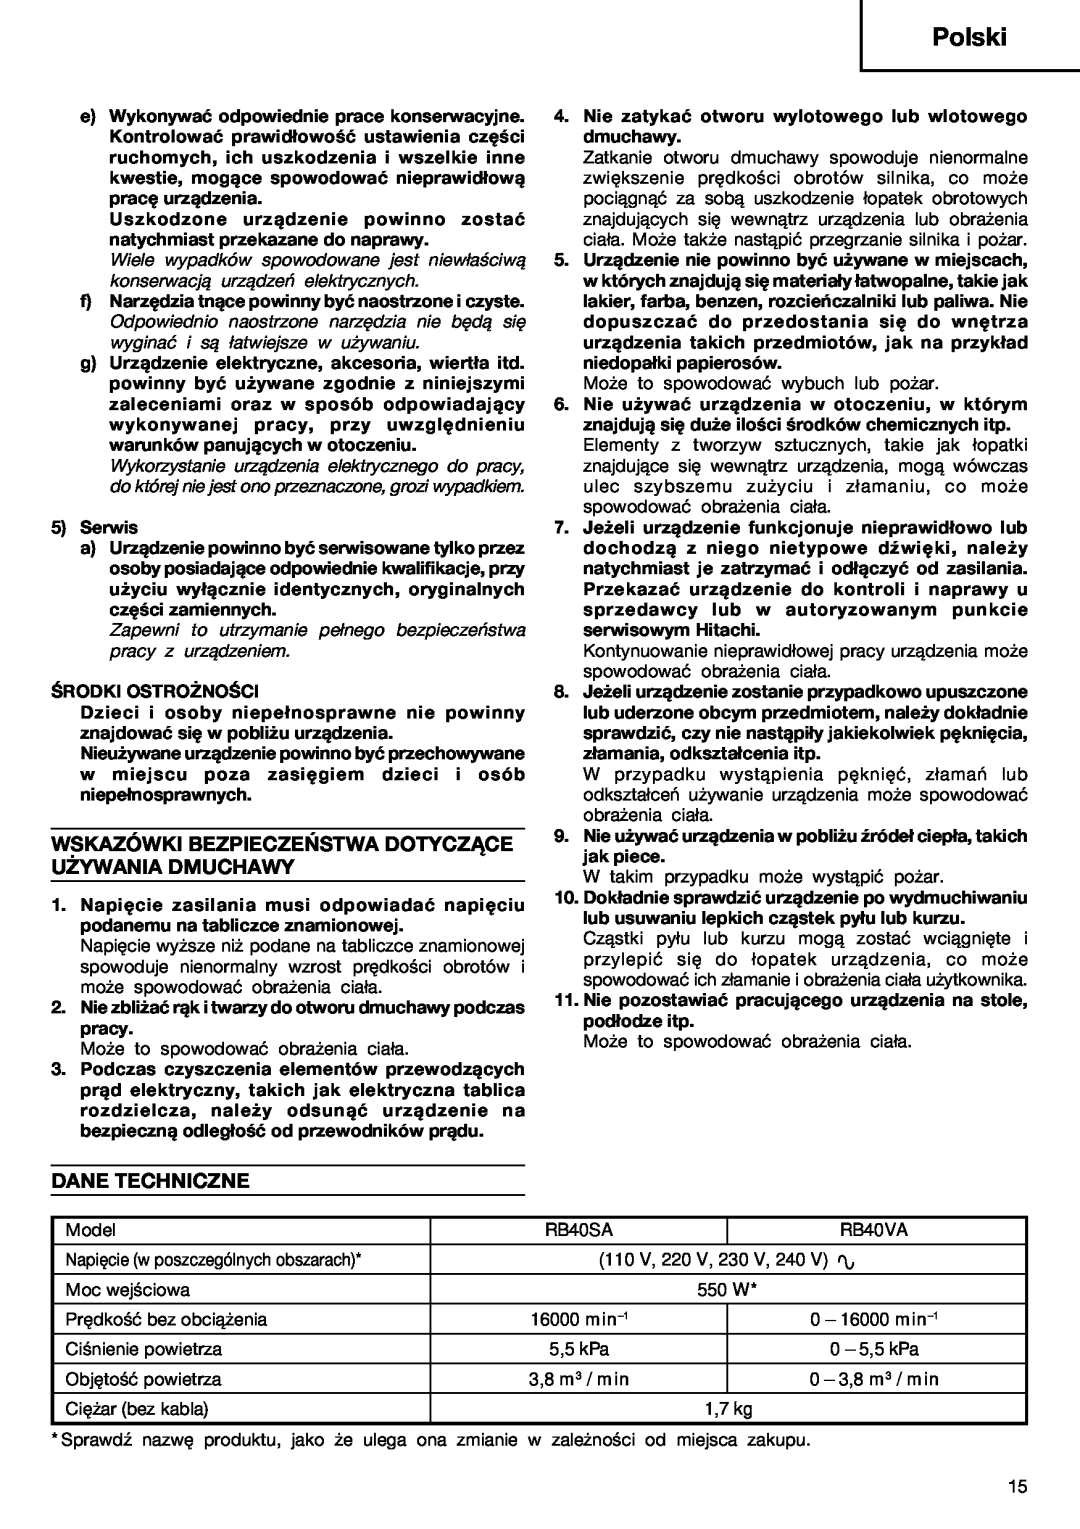 Humminbird RB 40VA manual Wskazówki Bezpieczeństwa Dotyczące Używania Dmuchawy, Dane Techniczne, Polski 